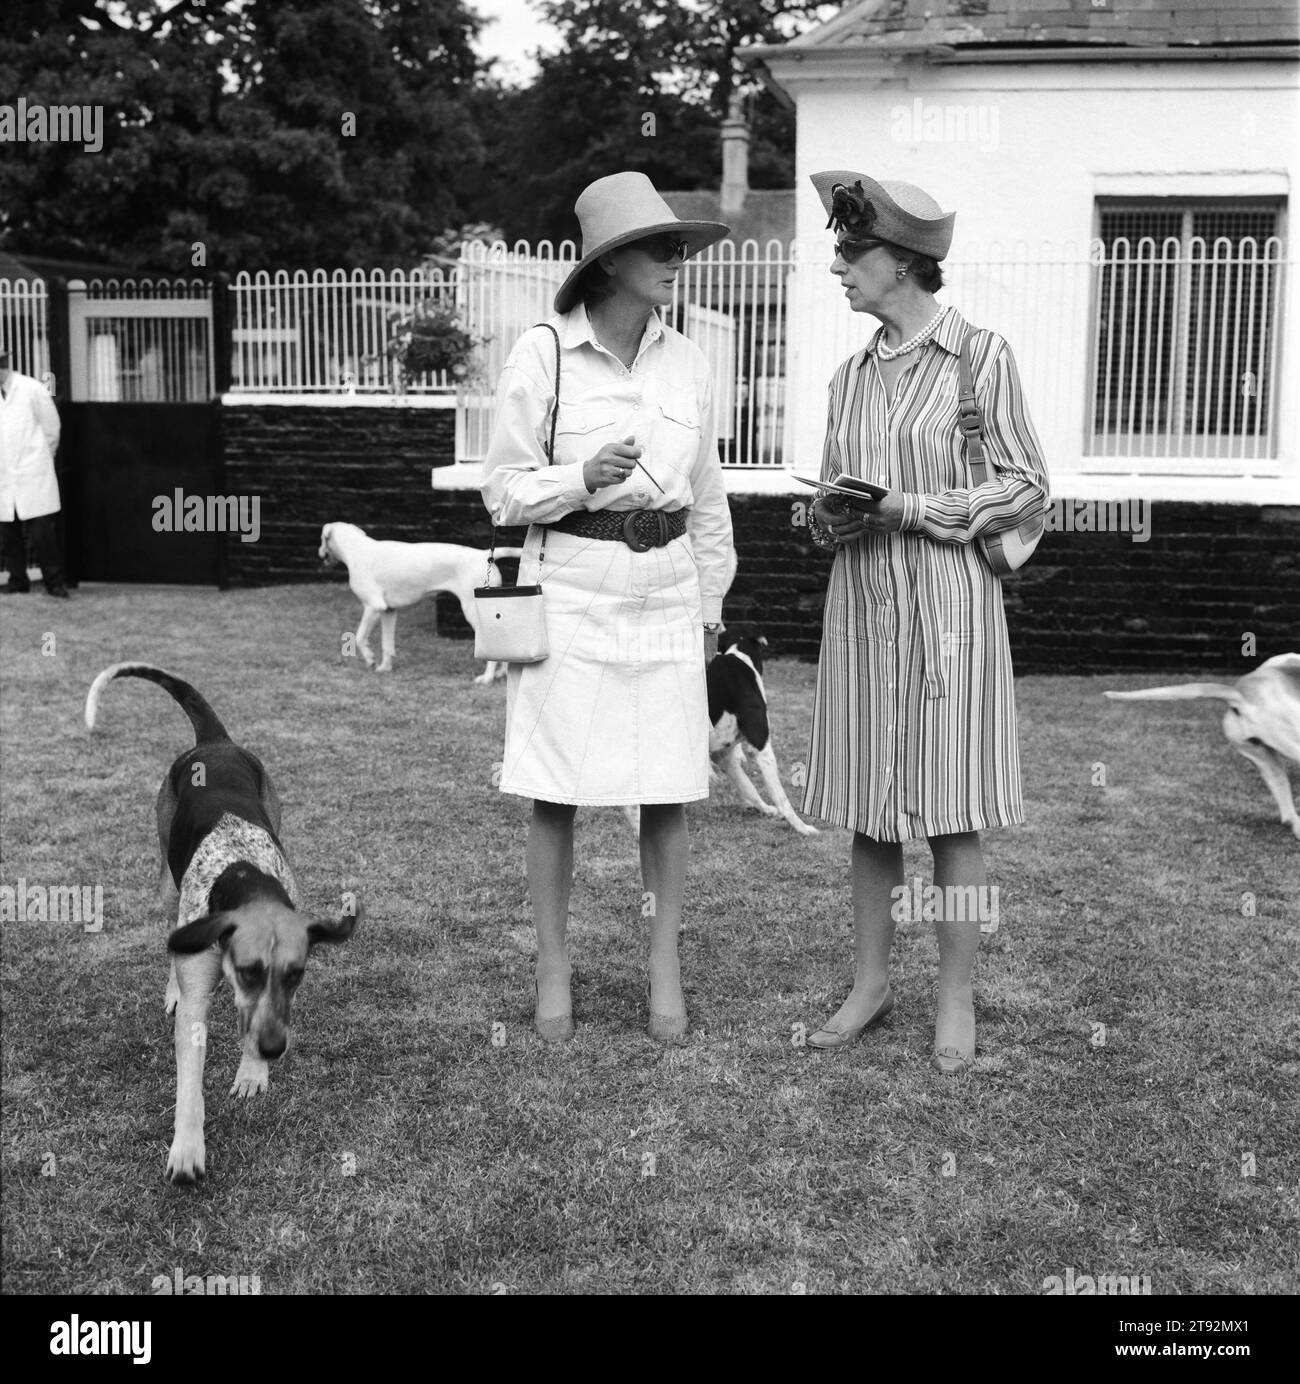 Puppy Show UK. Duke of Beaufort's Hunt, le spectacle de chiots à Badminton House. C'est le point culminant de la saison estivale, où les promeneurs de chiots peuvent fièrement regarder leurs charges faire de leur mieux. Deux dames discutent des mérites des chiots à la fin de la compétition. Badminton, Gloucestershire Angleterre Royaume-Uni années 2002 2000 HOMER SYKES Banque D'Images